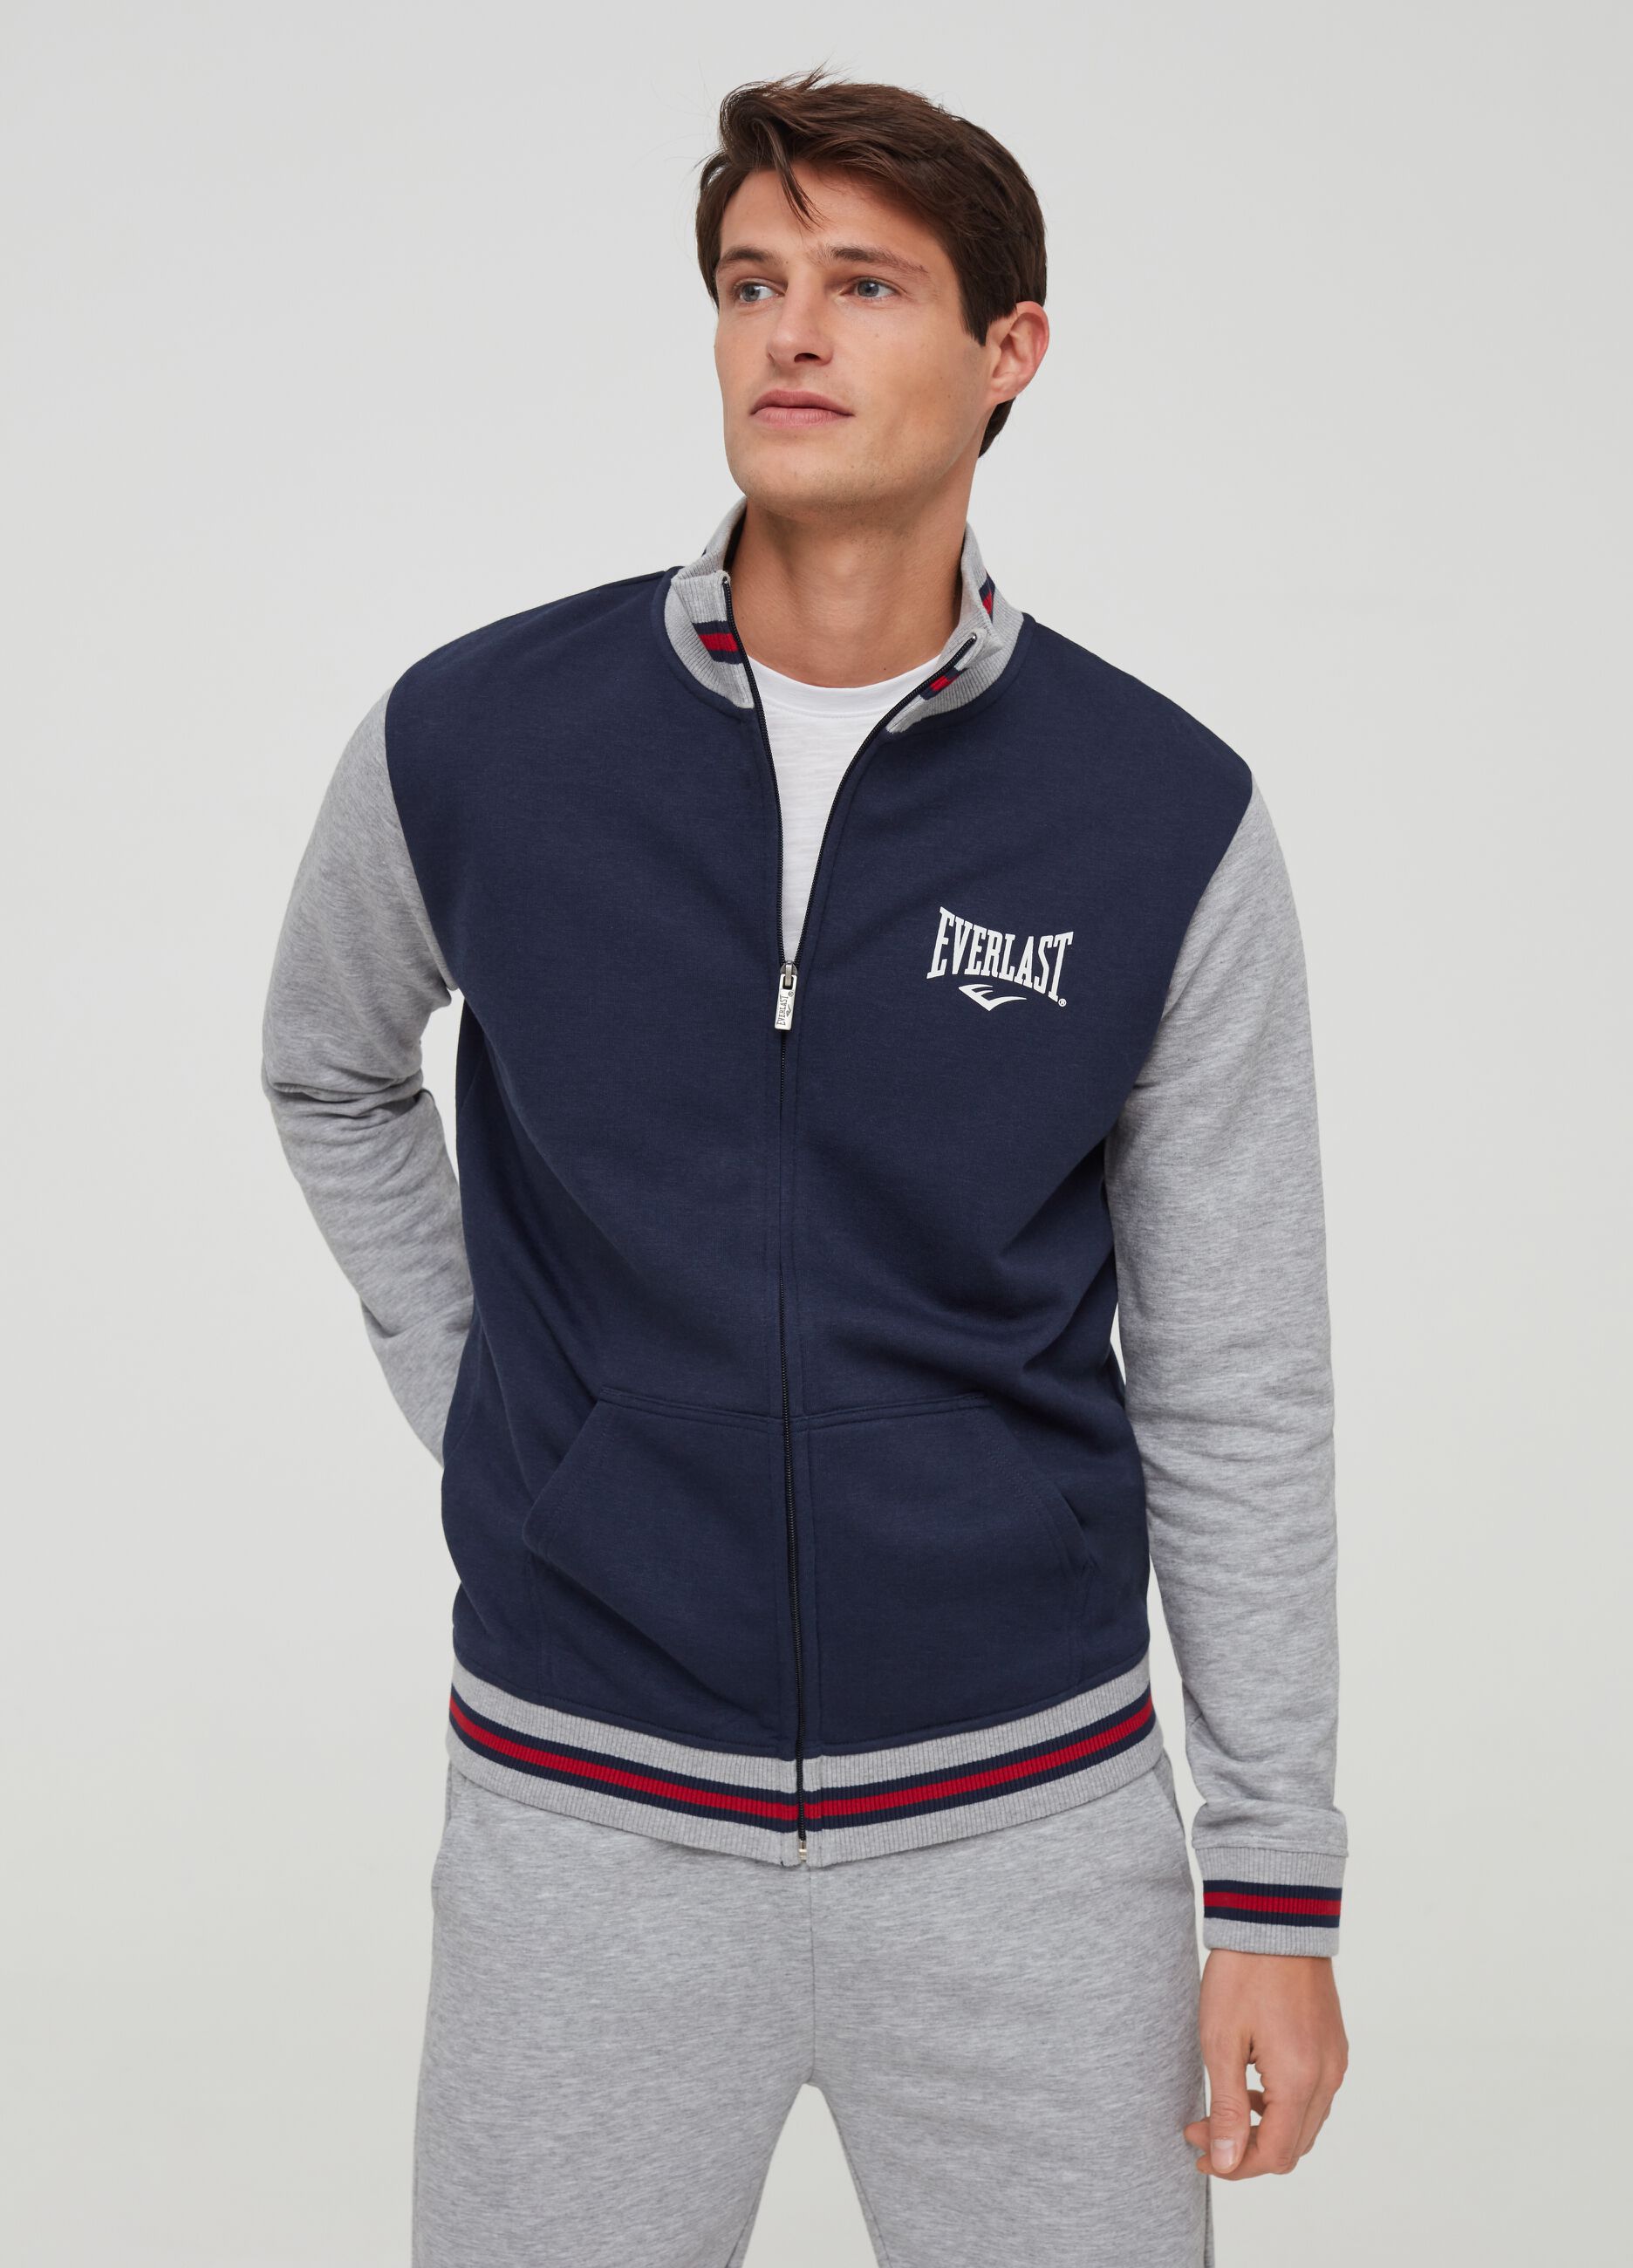 Full-zip Everlast sweatshirt in fleece with high neck